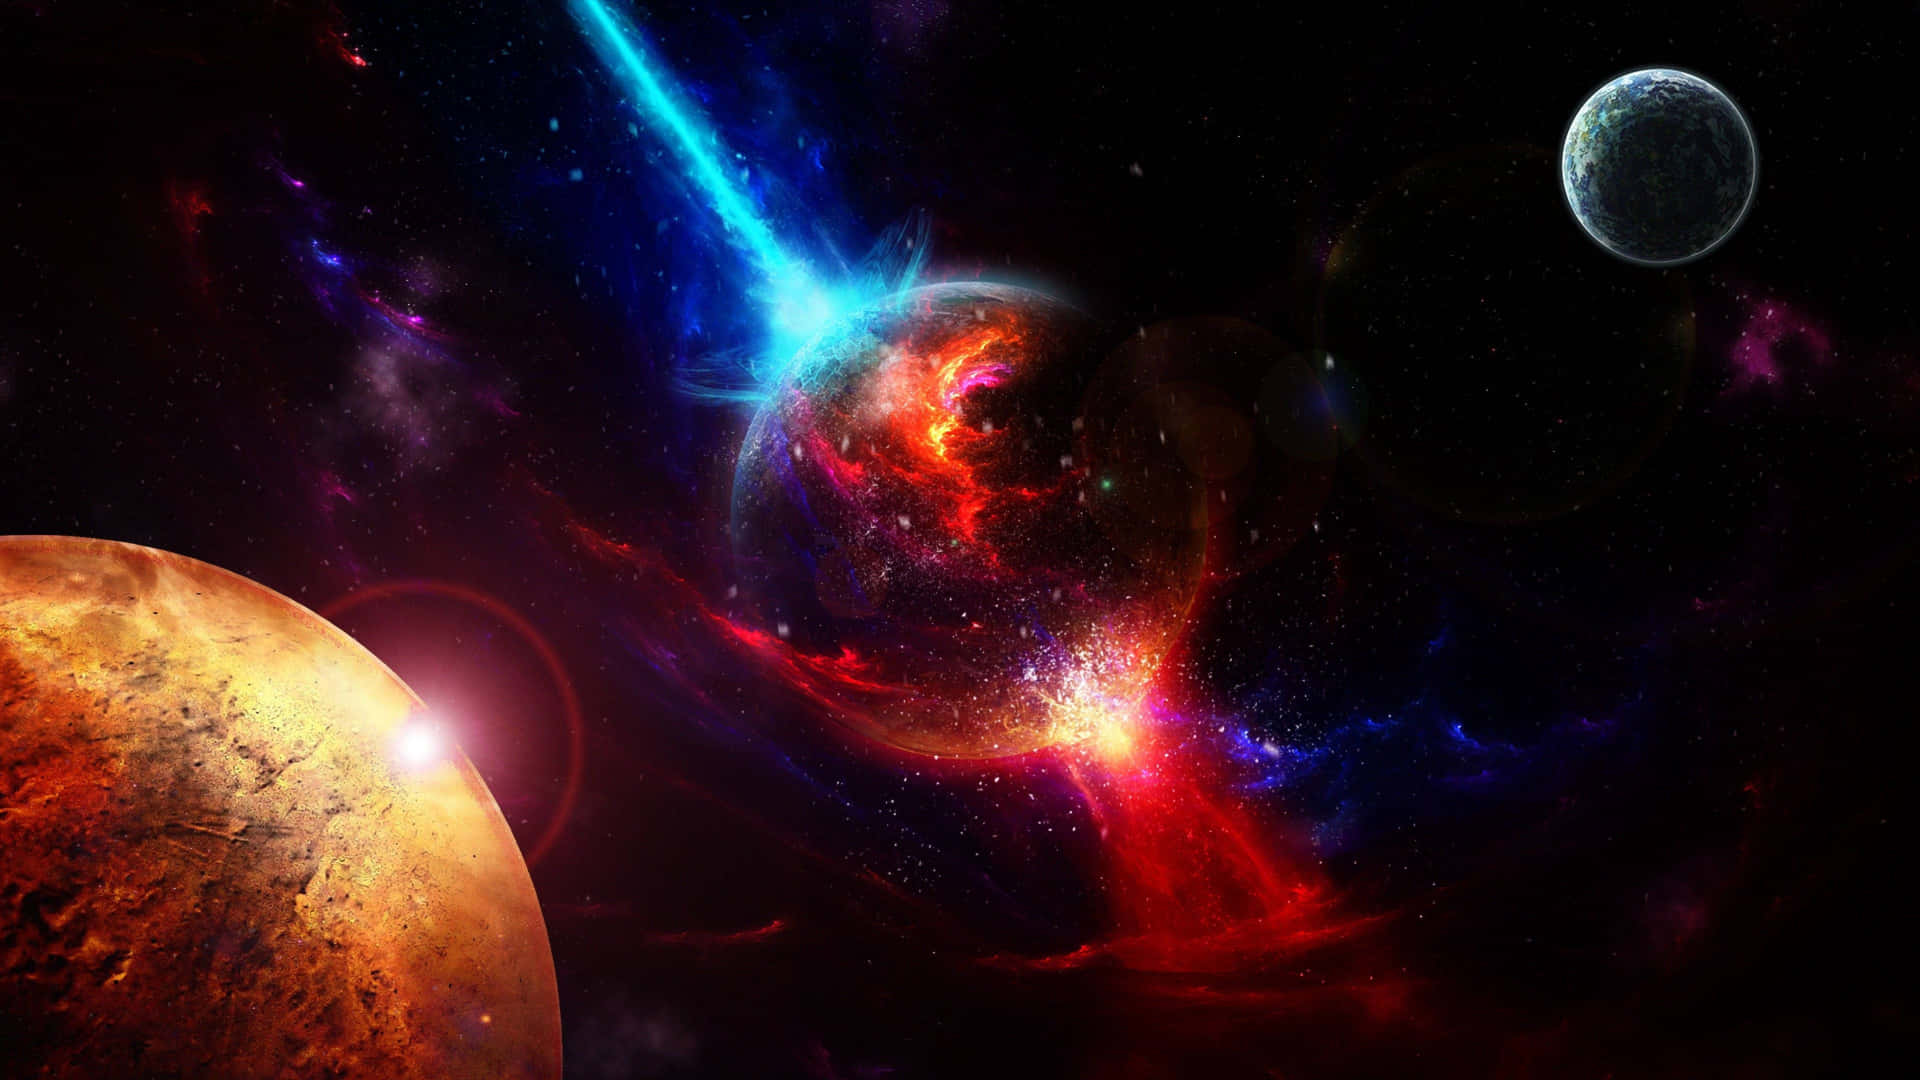 Nebulosavermelha No Espaço Exterior. Papel de Parede